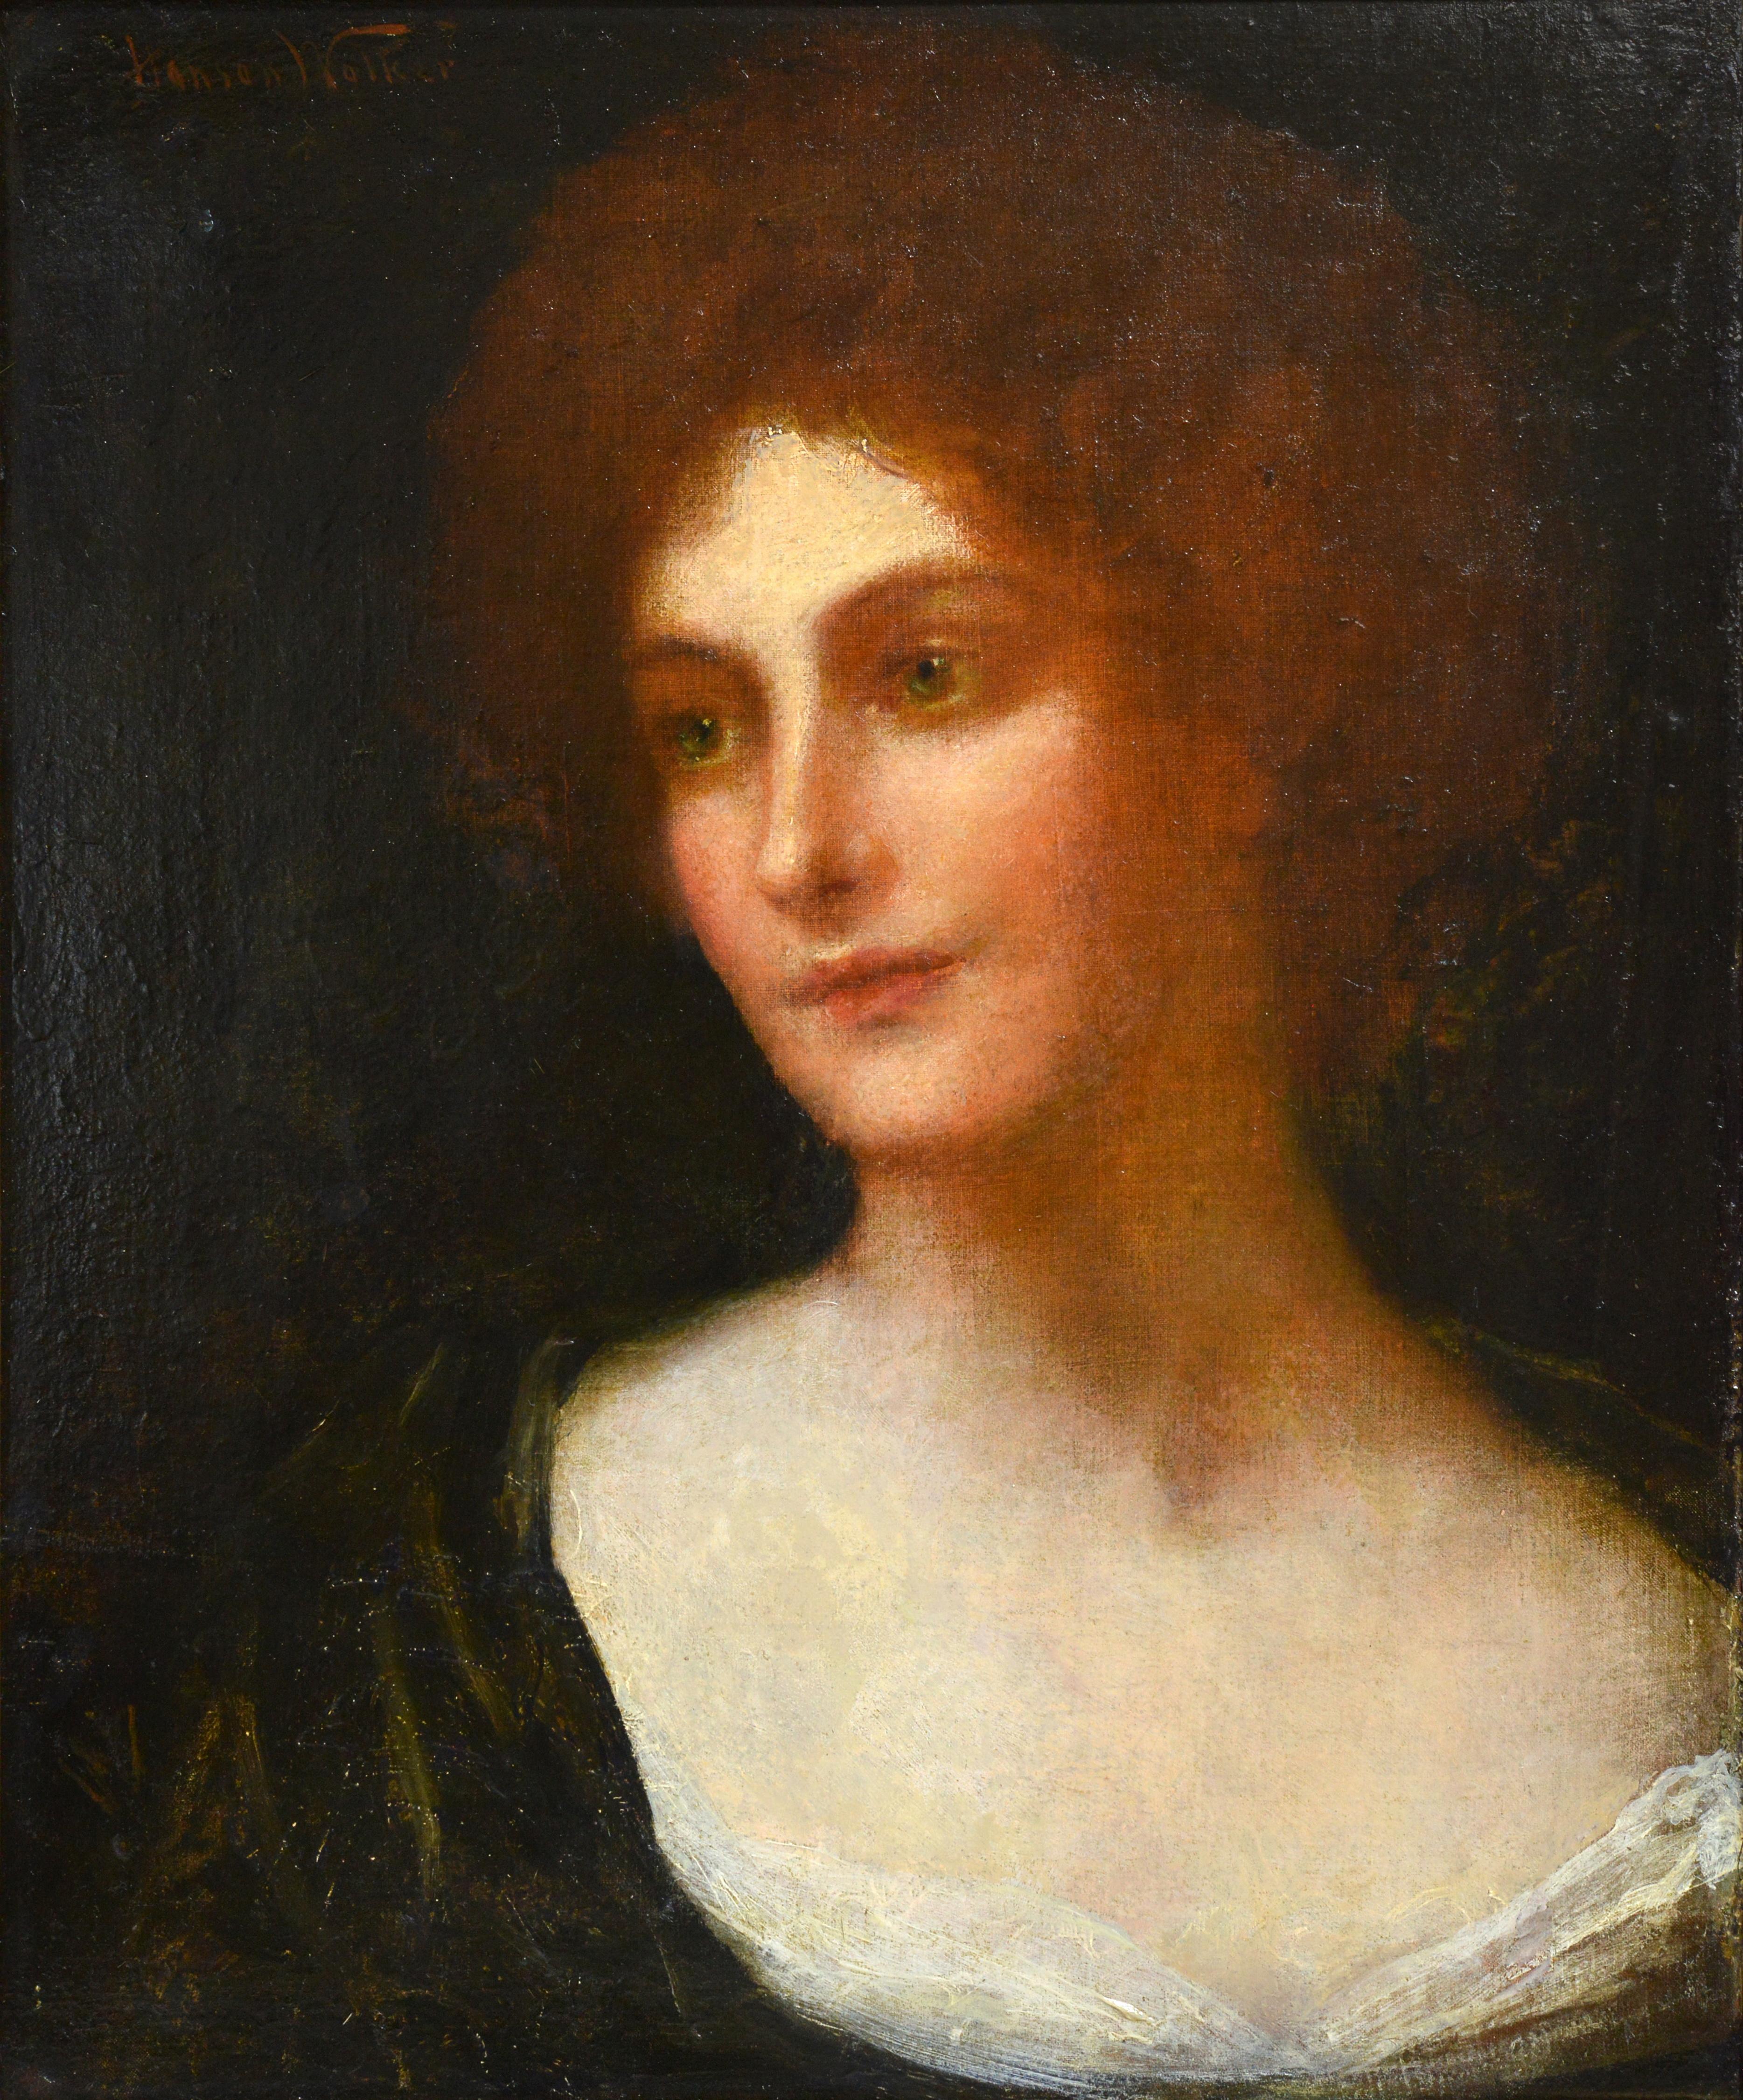 Porträt einer rothaarigen Dame mit Smaragdaugen, britisches Ölgemälde des 19. Jahrhunderts – Painting von John Hanson Walker